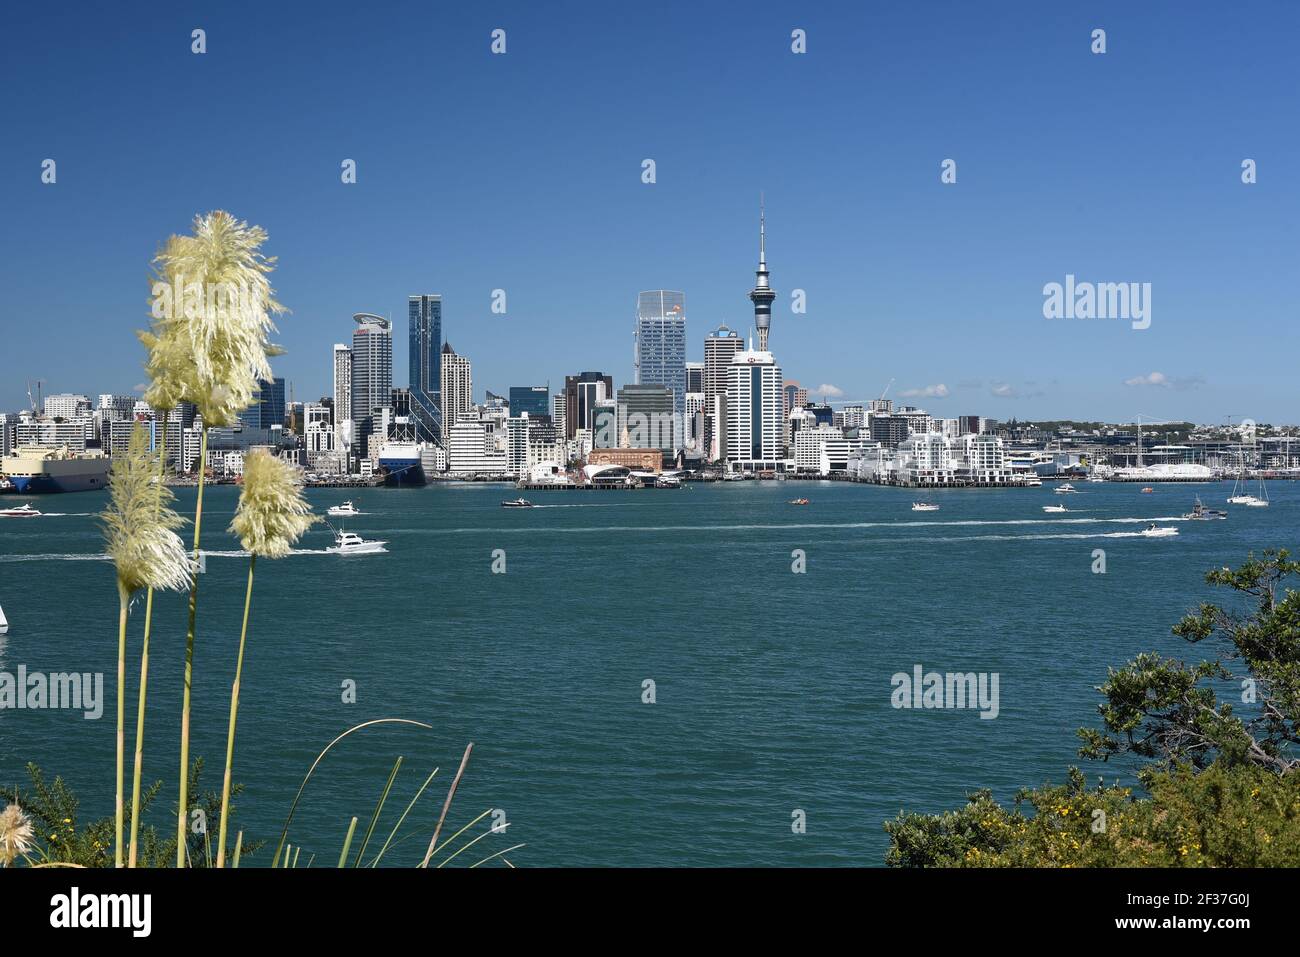 Ciudad de Auckland City Cityscape desde Devonport durante la Copa América cielo azul sin nubes, agua azul con Pampas Grass y barcos en el agua. Sin nubes Foto de stock